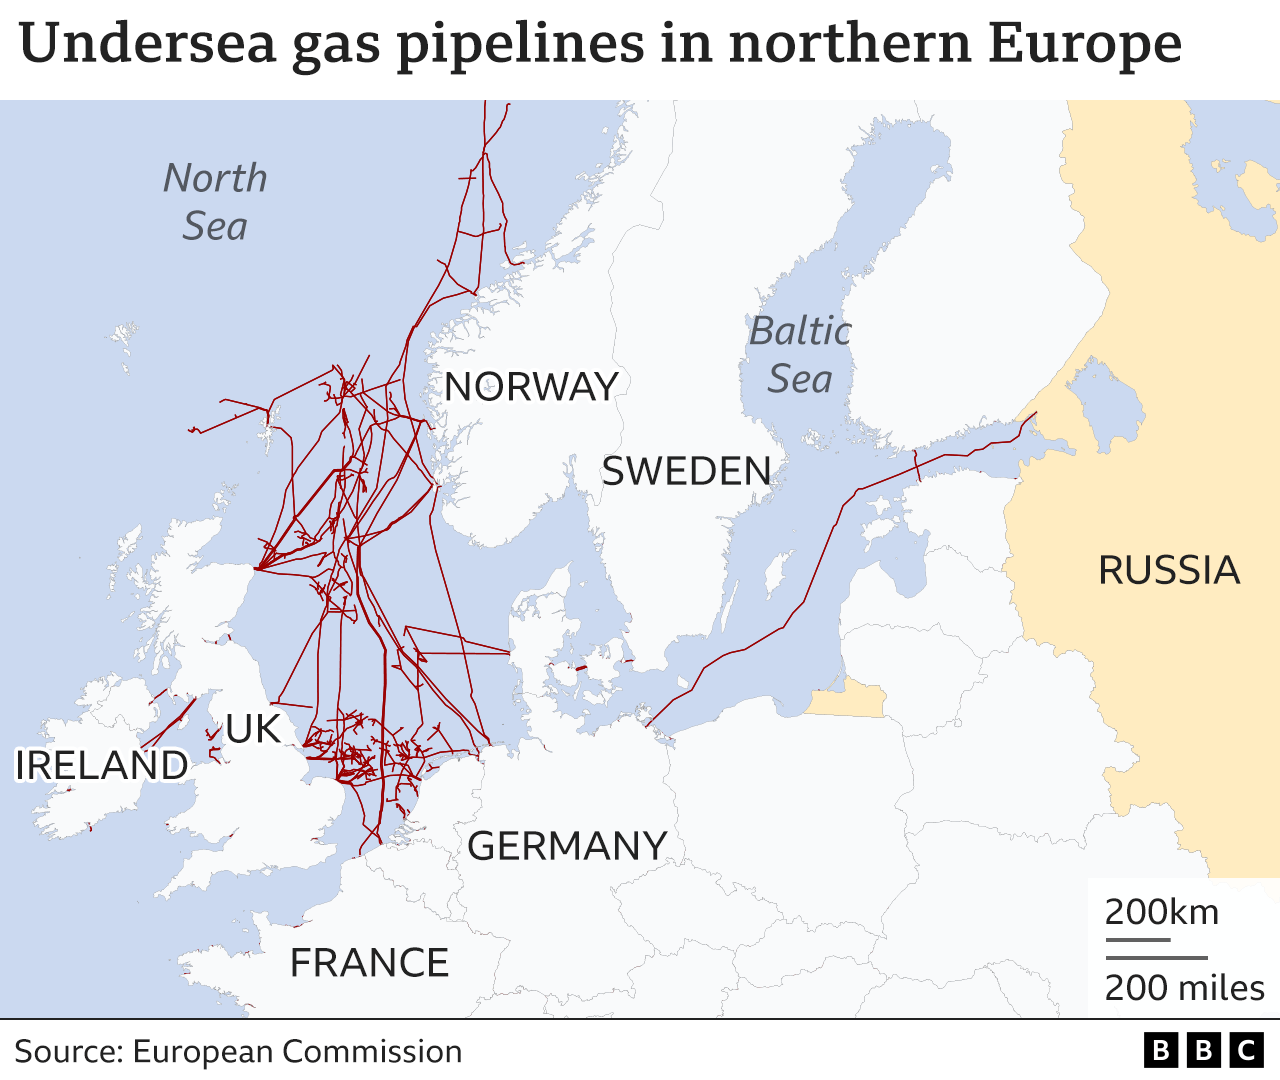 Undersea gas pipelines in Northern Europe